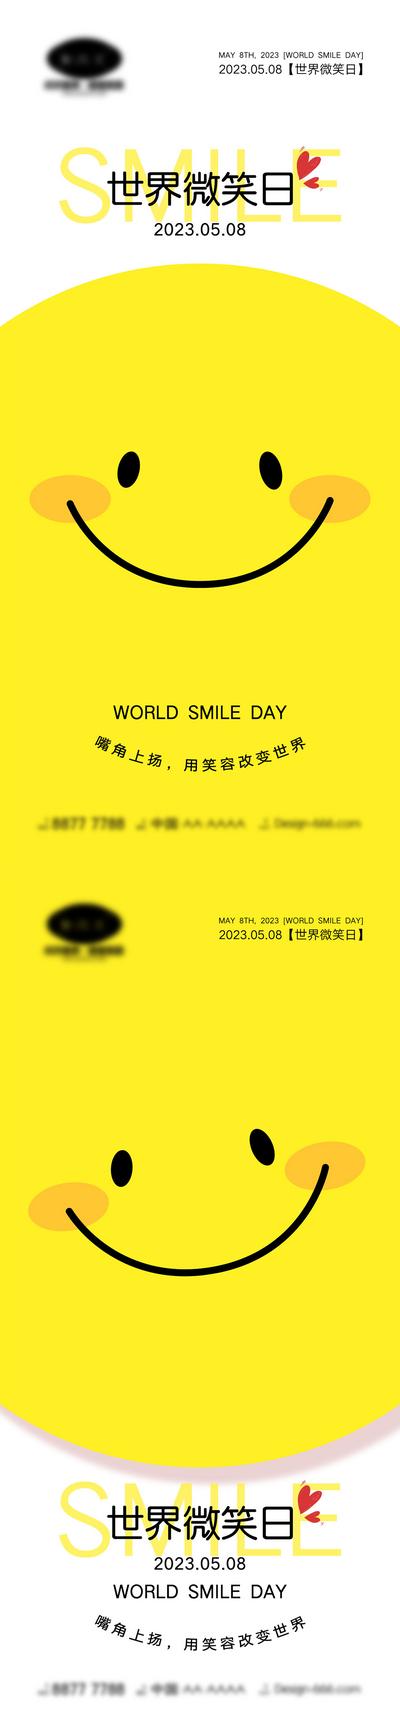 【南门网】海报 创意 公立节日 世界微笑日 58 微笑日 笑脸 笑容 创新 简约 卡通 可爱